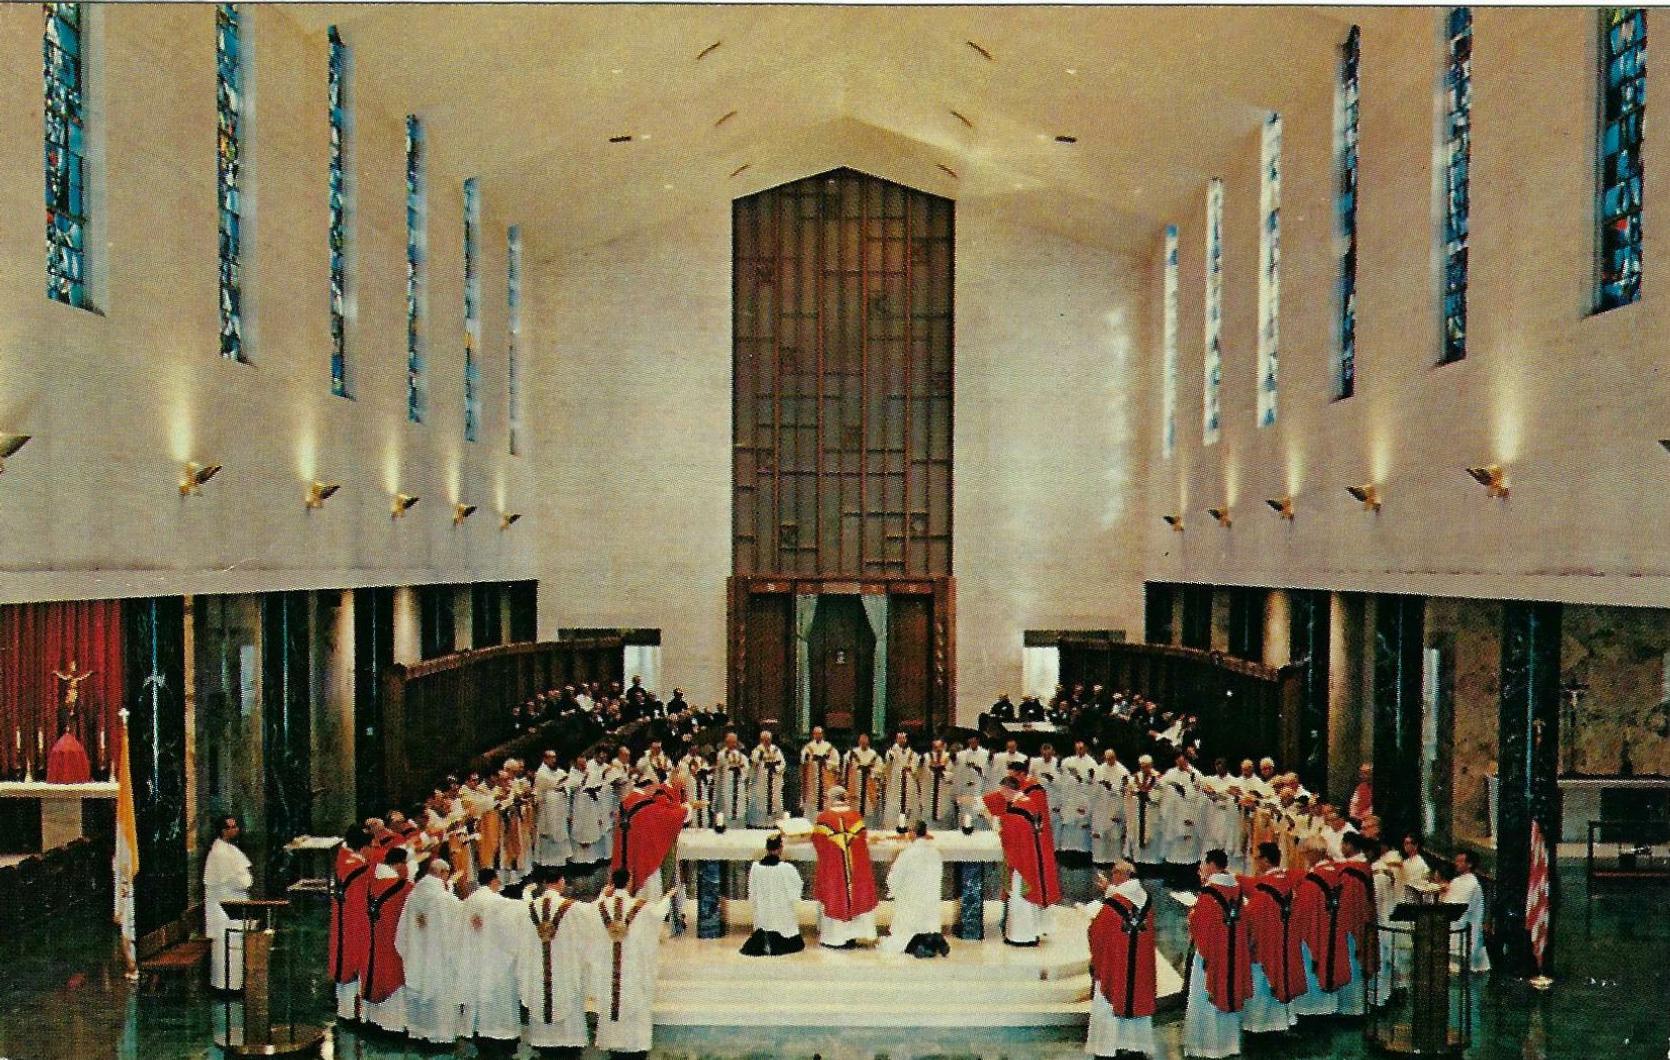 1965 - St. Norbert Abbey, Mass